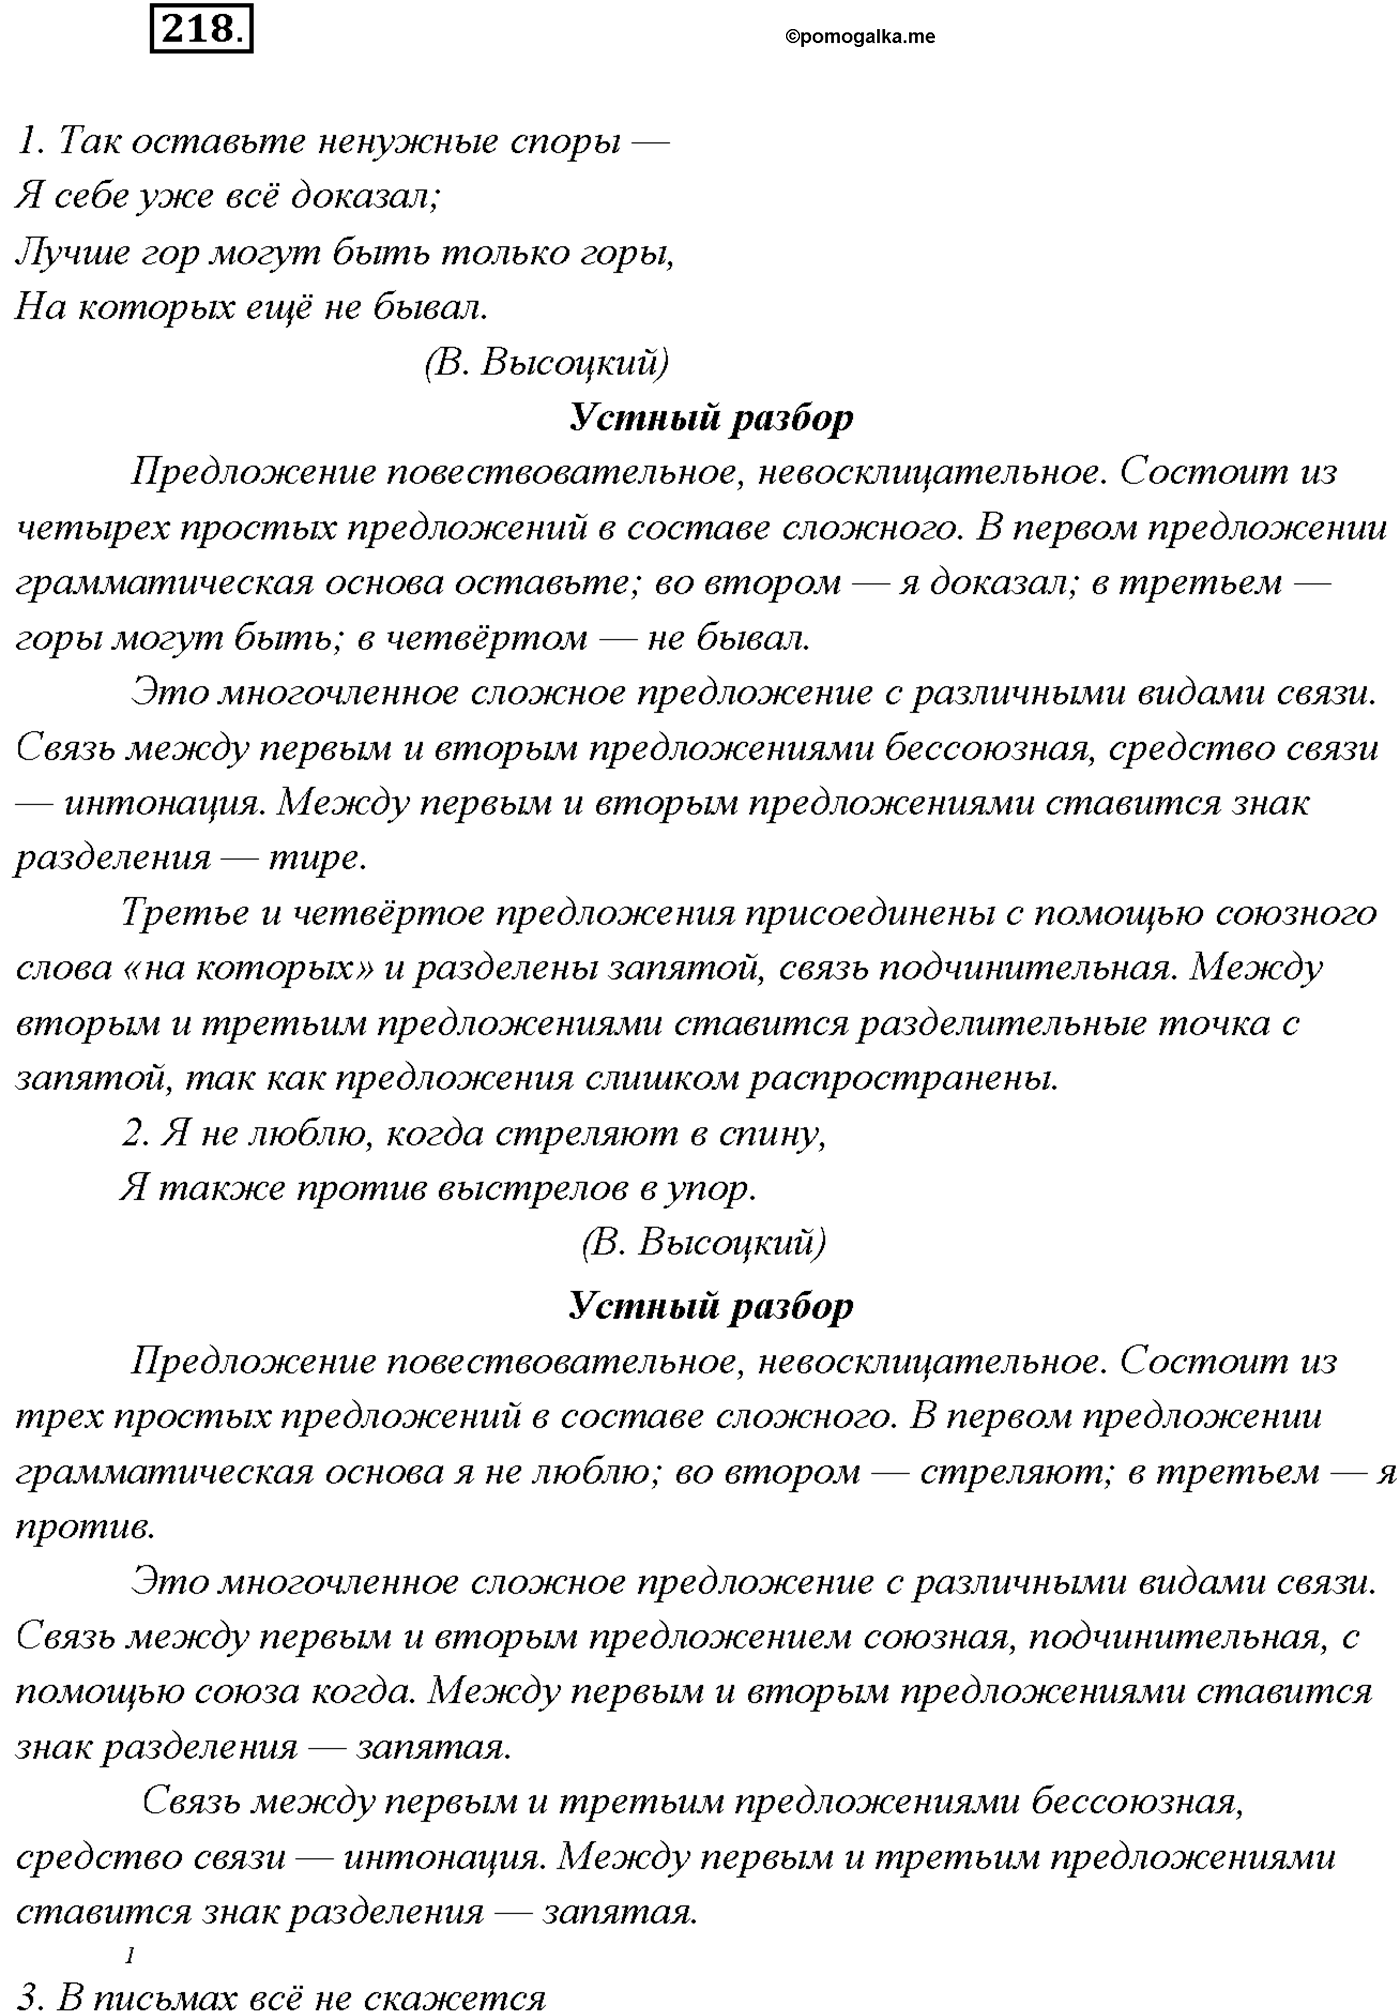 упражнение №218 русский язык 9 класс Тростенцова